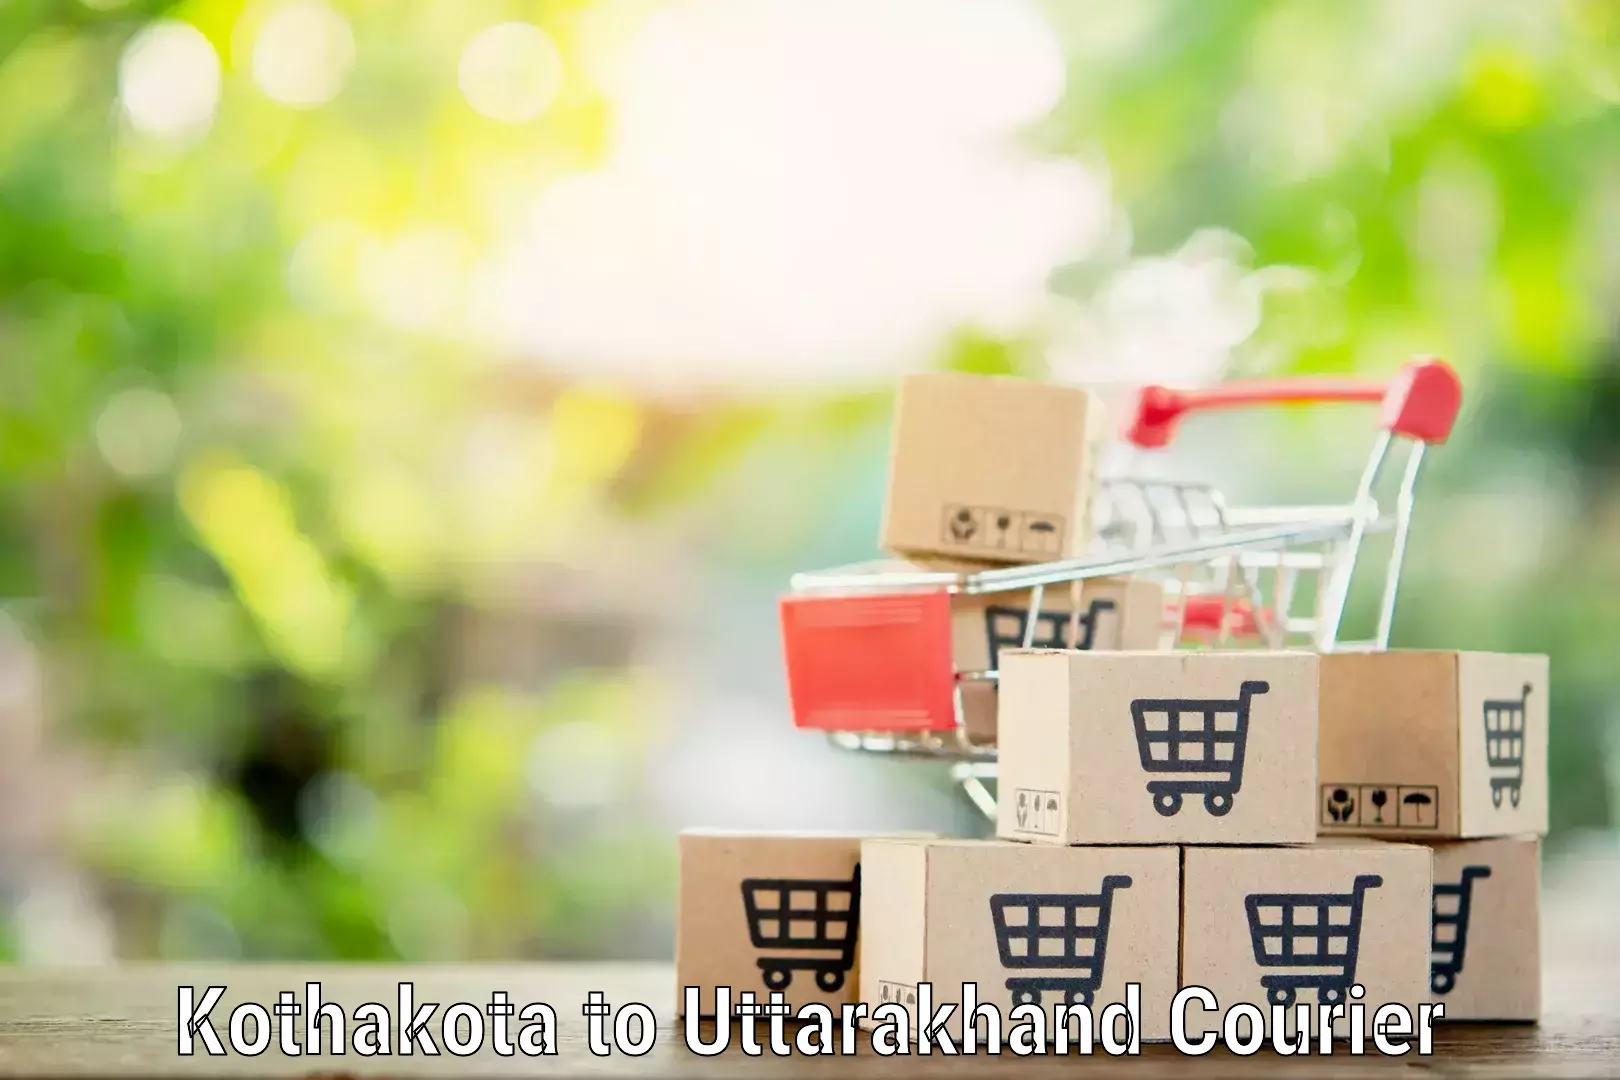 Trusted household movers Kothakota to Uttarakhand